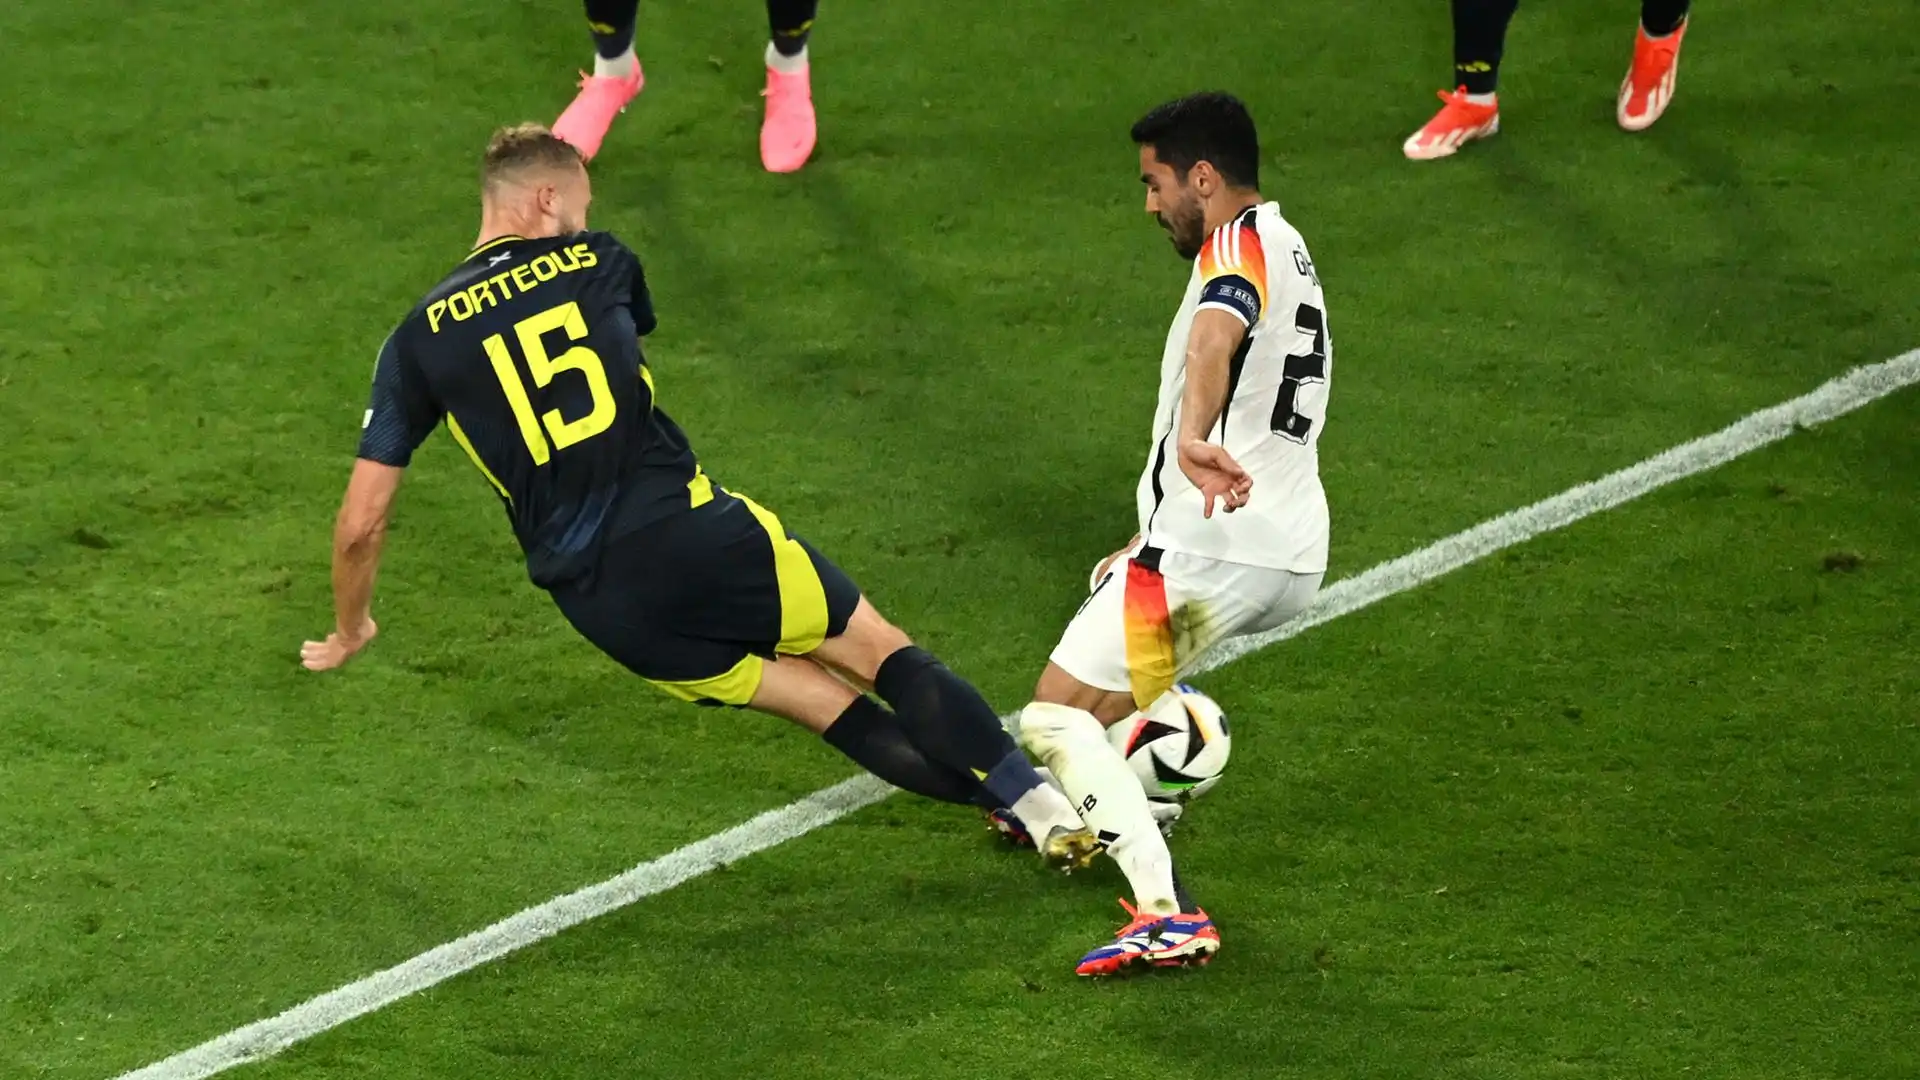 Sul risultato di 2-0 per la squadra di casa, il centrocampista tedesco è stato abbattuto nell'area scozzese